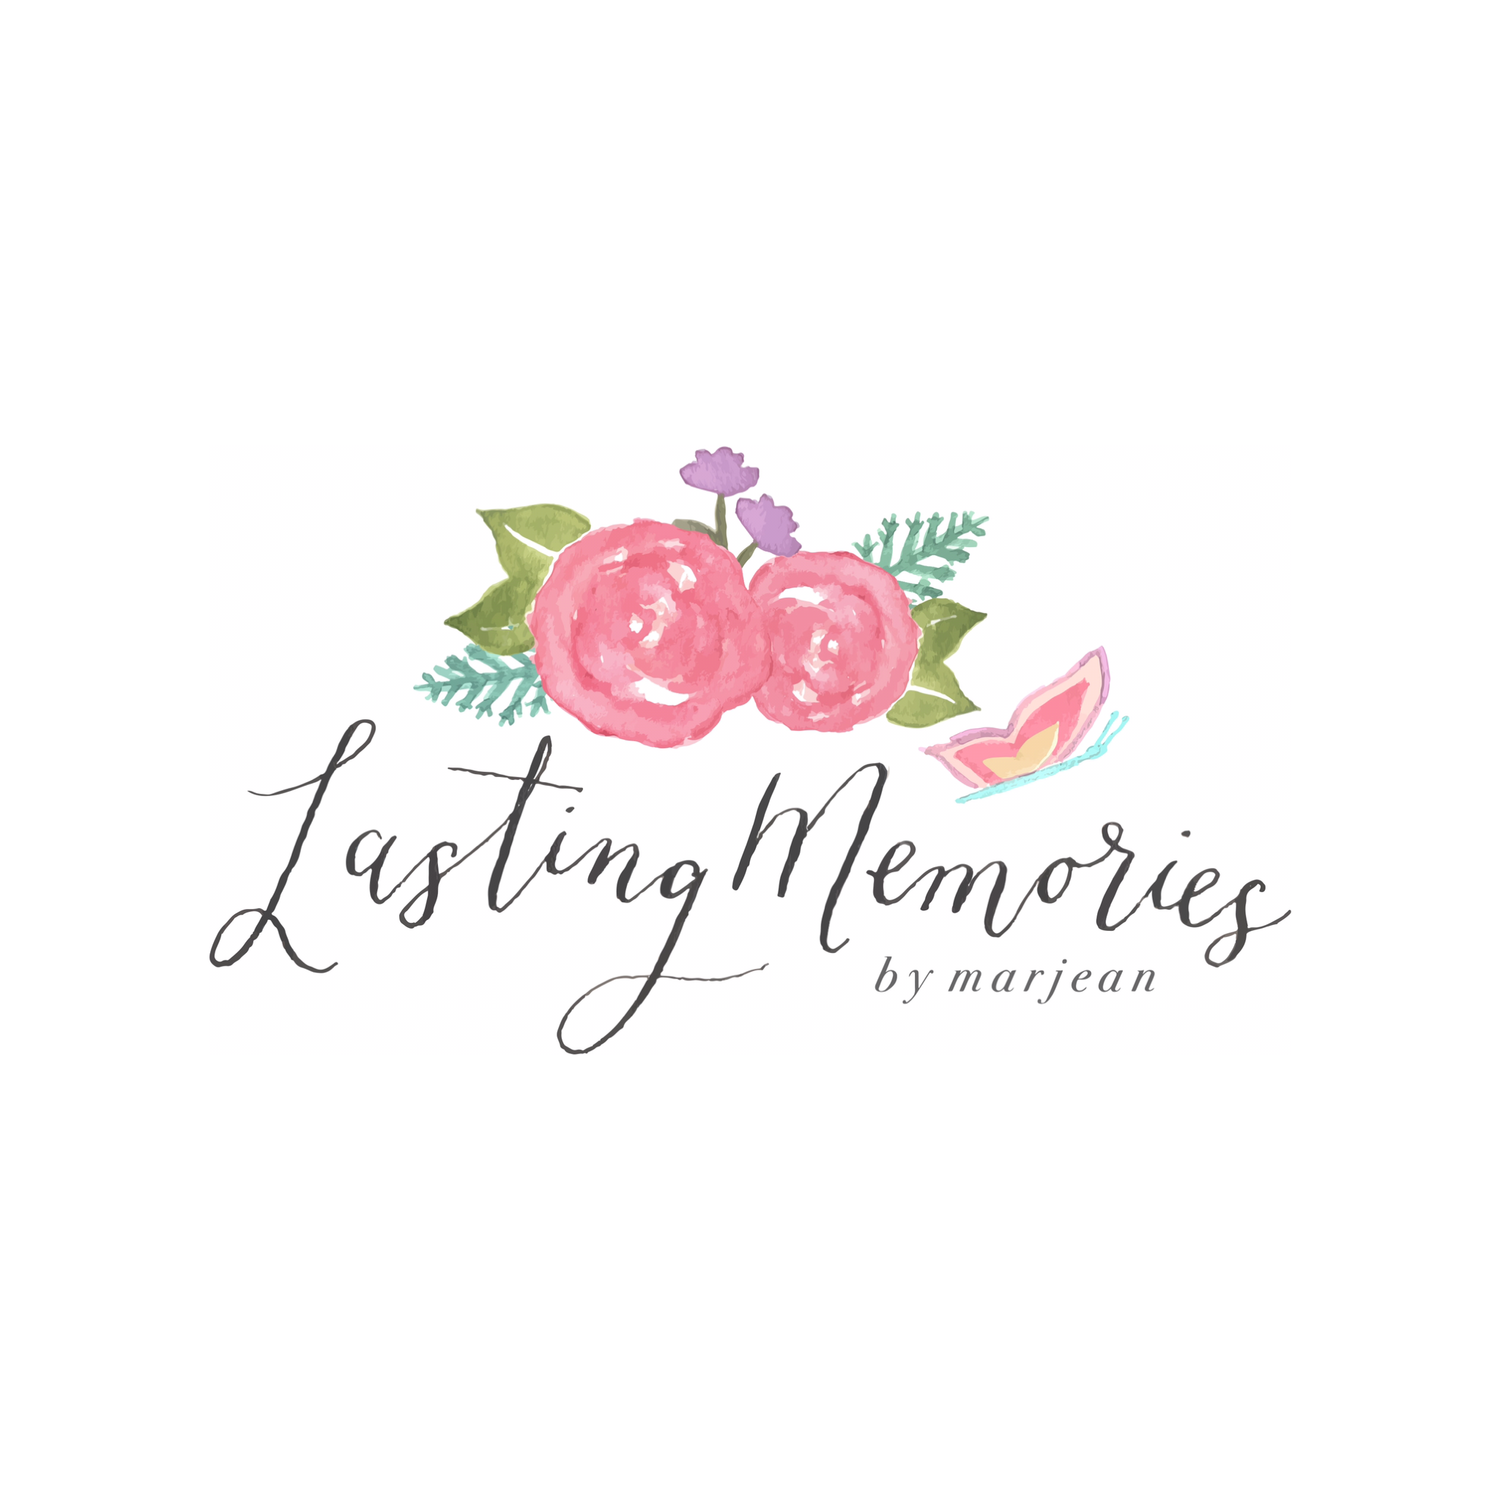 Lasting Memories by Marjean